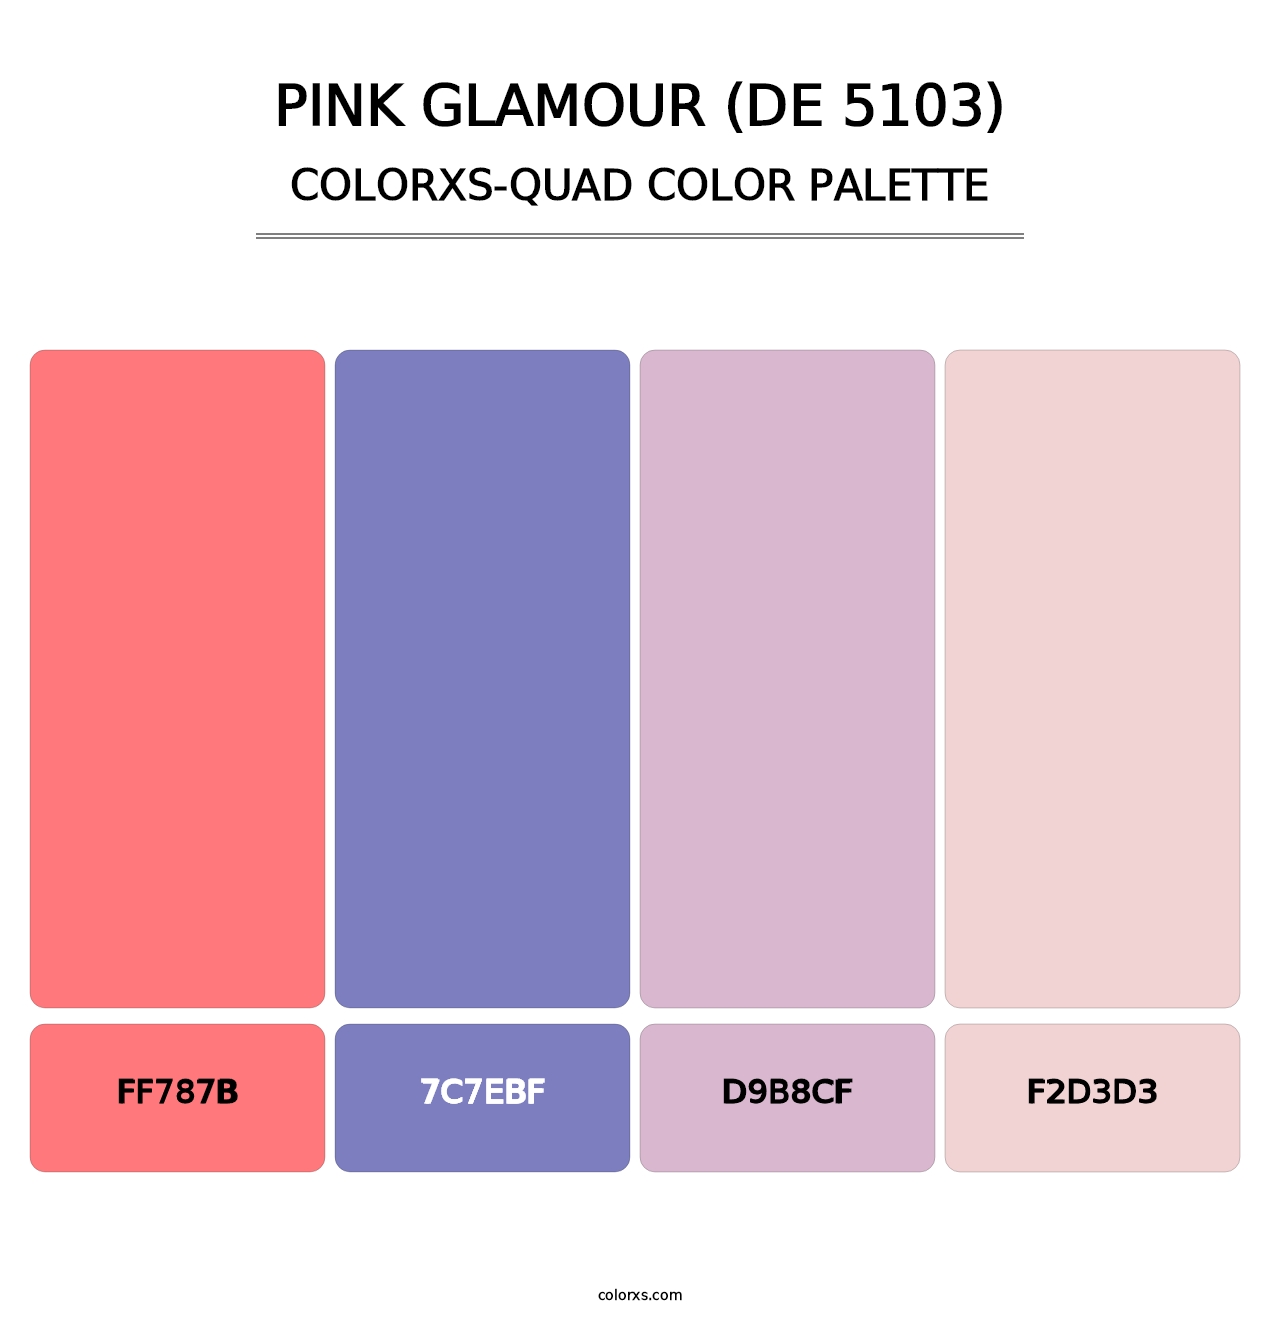 Pink Glamour (DE 5103) - Colorxs Quad Palette